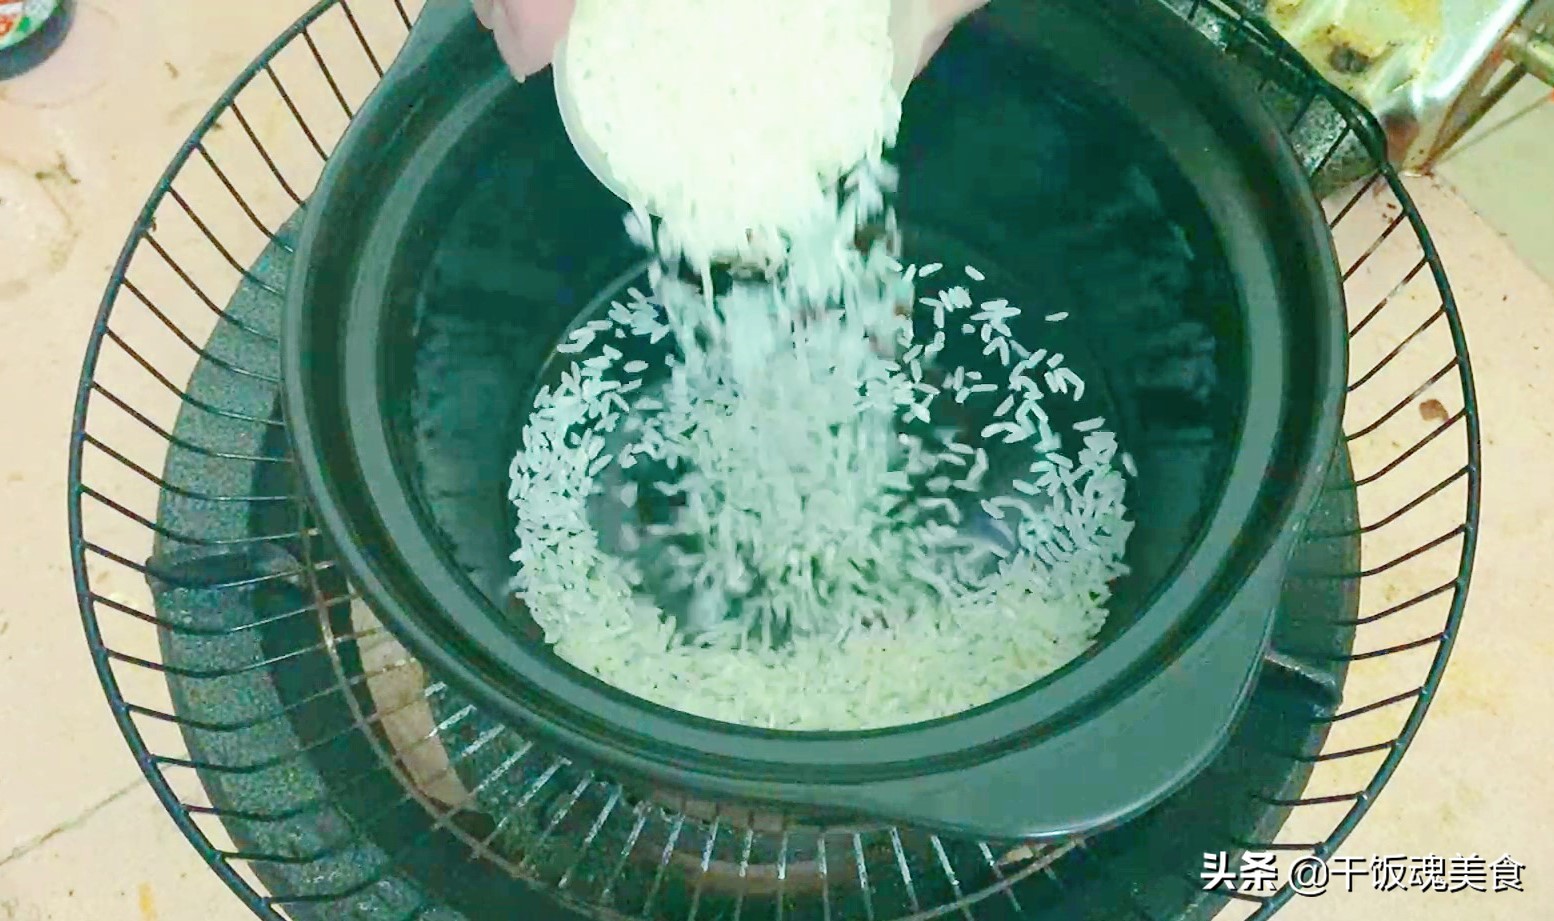 新买的砂锅使用前需怎么处理，处理黄，不会裂的方法介绍？